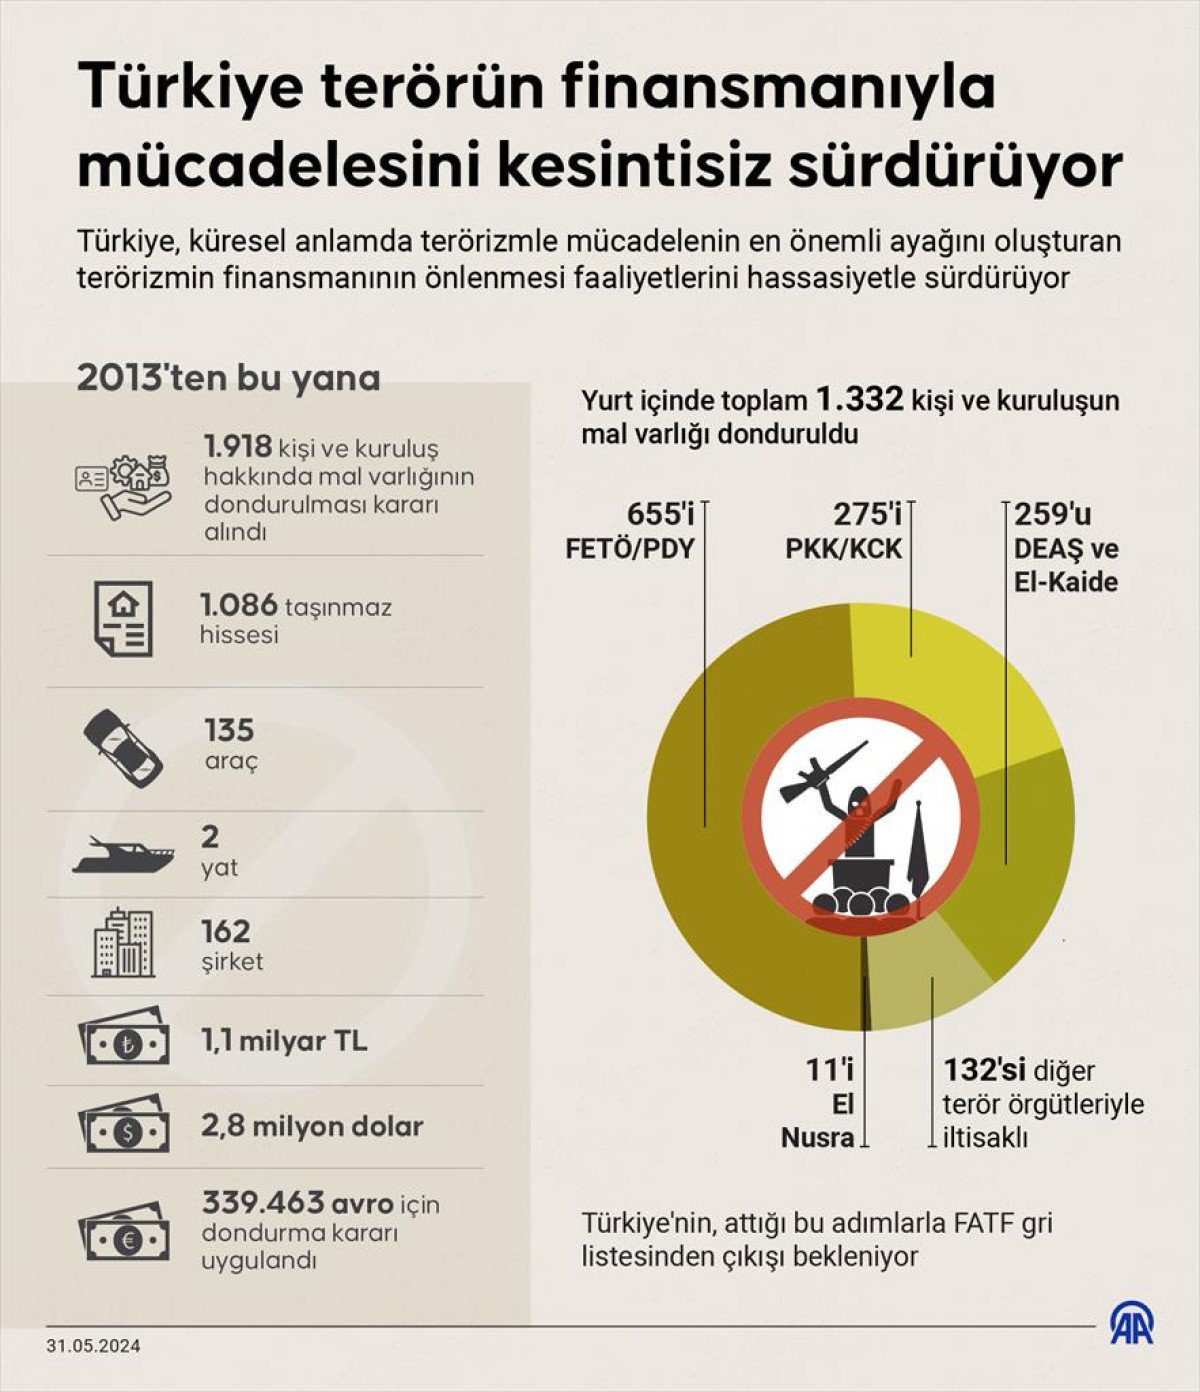 turkiye terorun finansmaniyla mucadelesini kesintisiz surduruyor 0 tABCyEEc